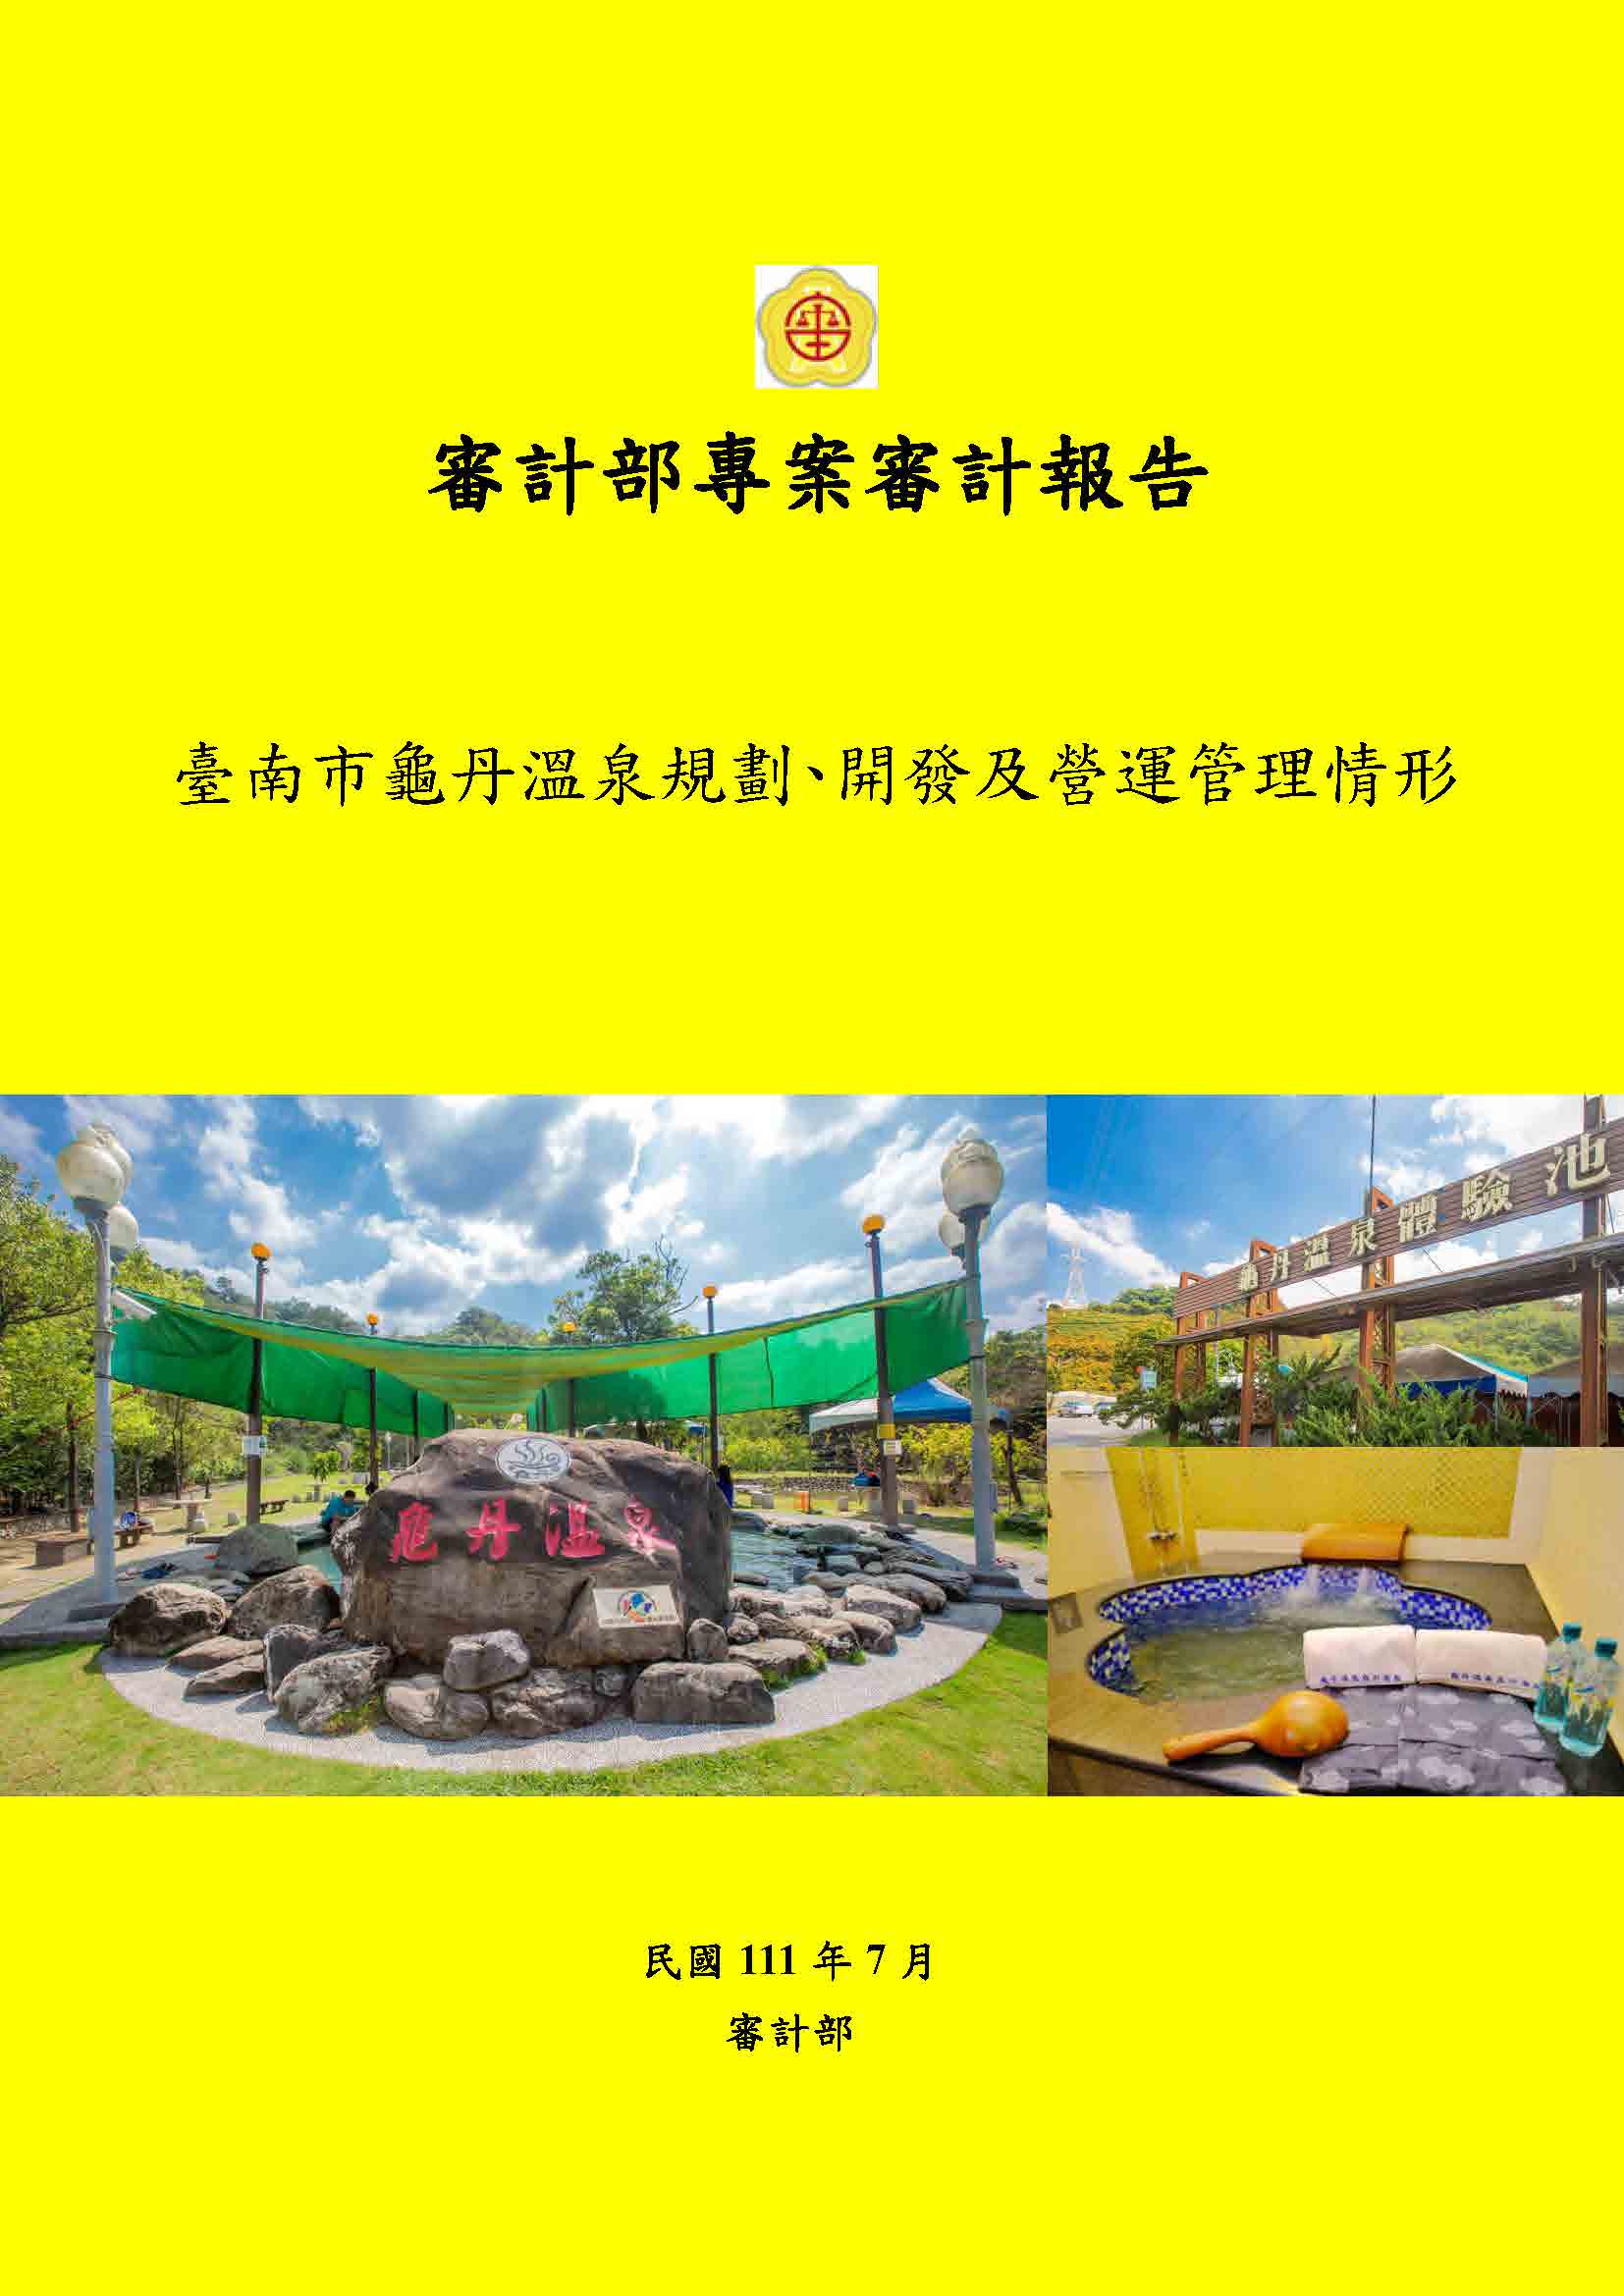 臺南市龜丹溫泉規劃、開發及營運管理情形專案審計報告